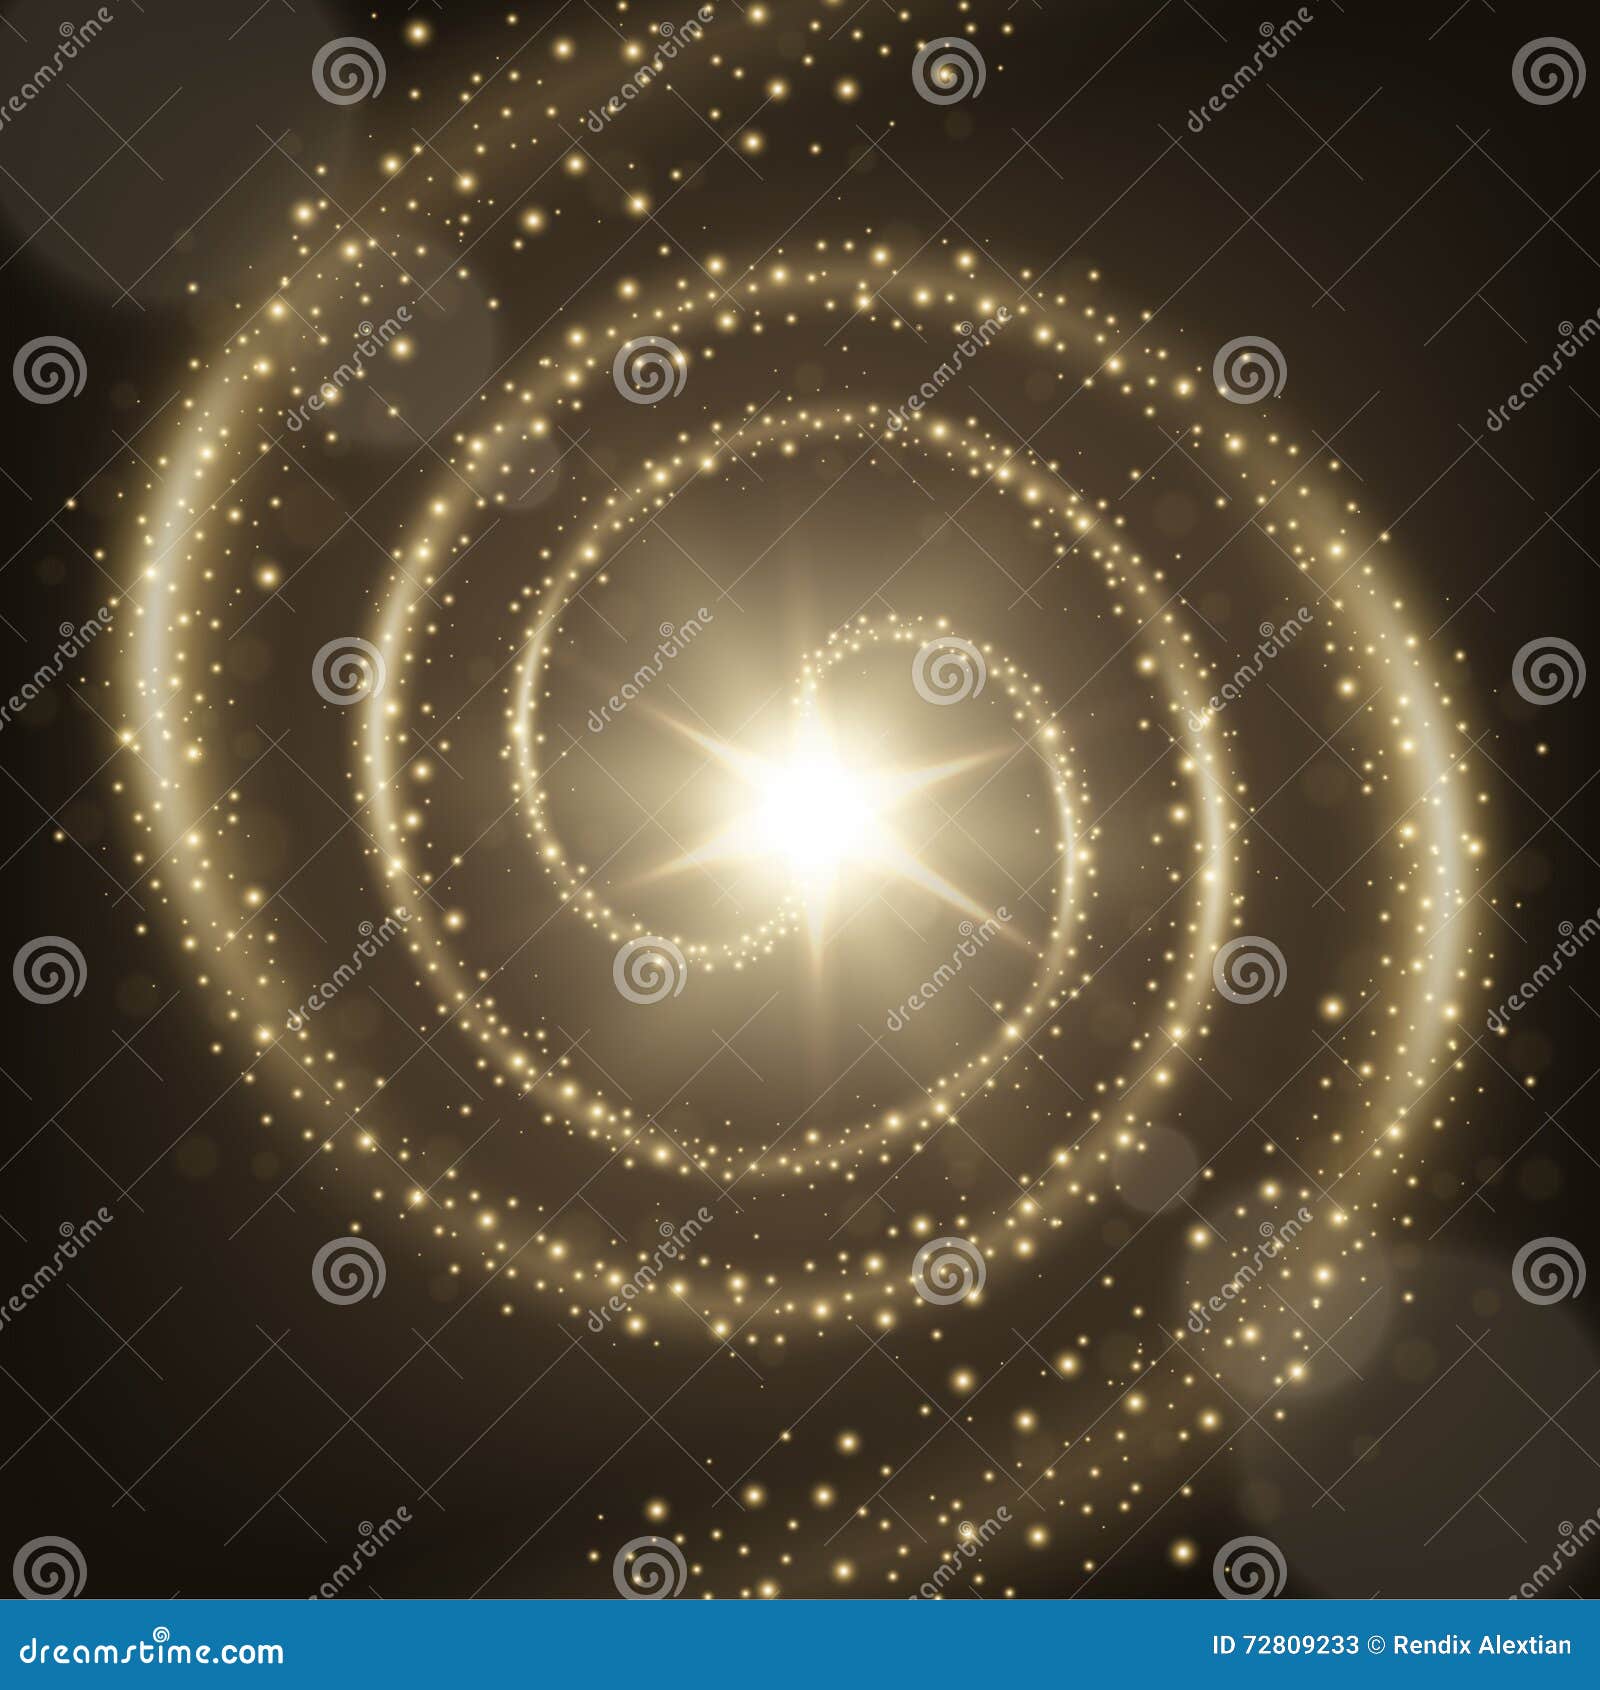 Illustratie van de Elegante spiraalvormige achtergrond van de deeltjessleep